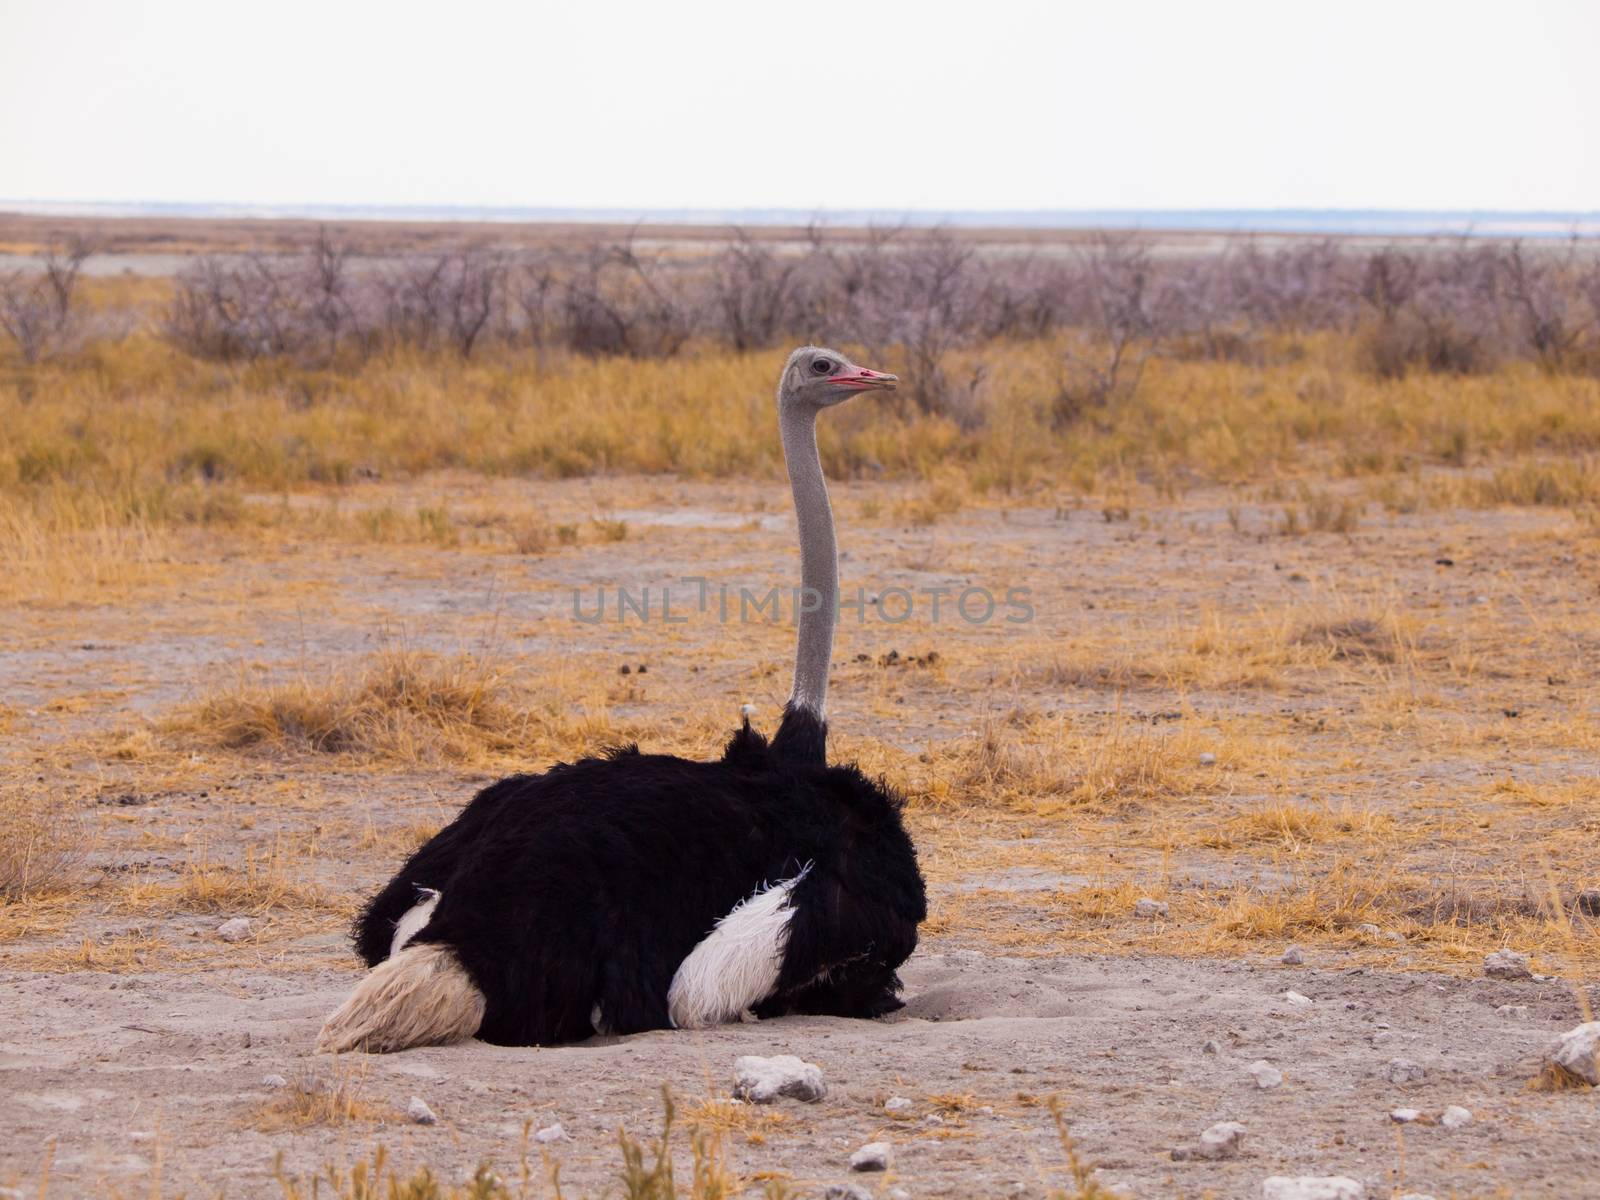 Sitting ostrich is watching around the savanna